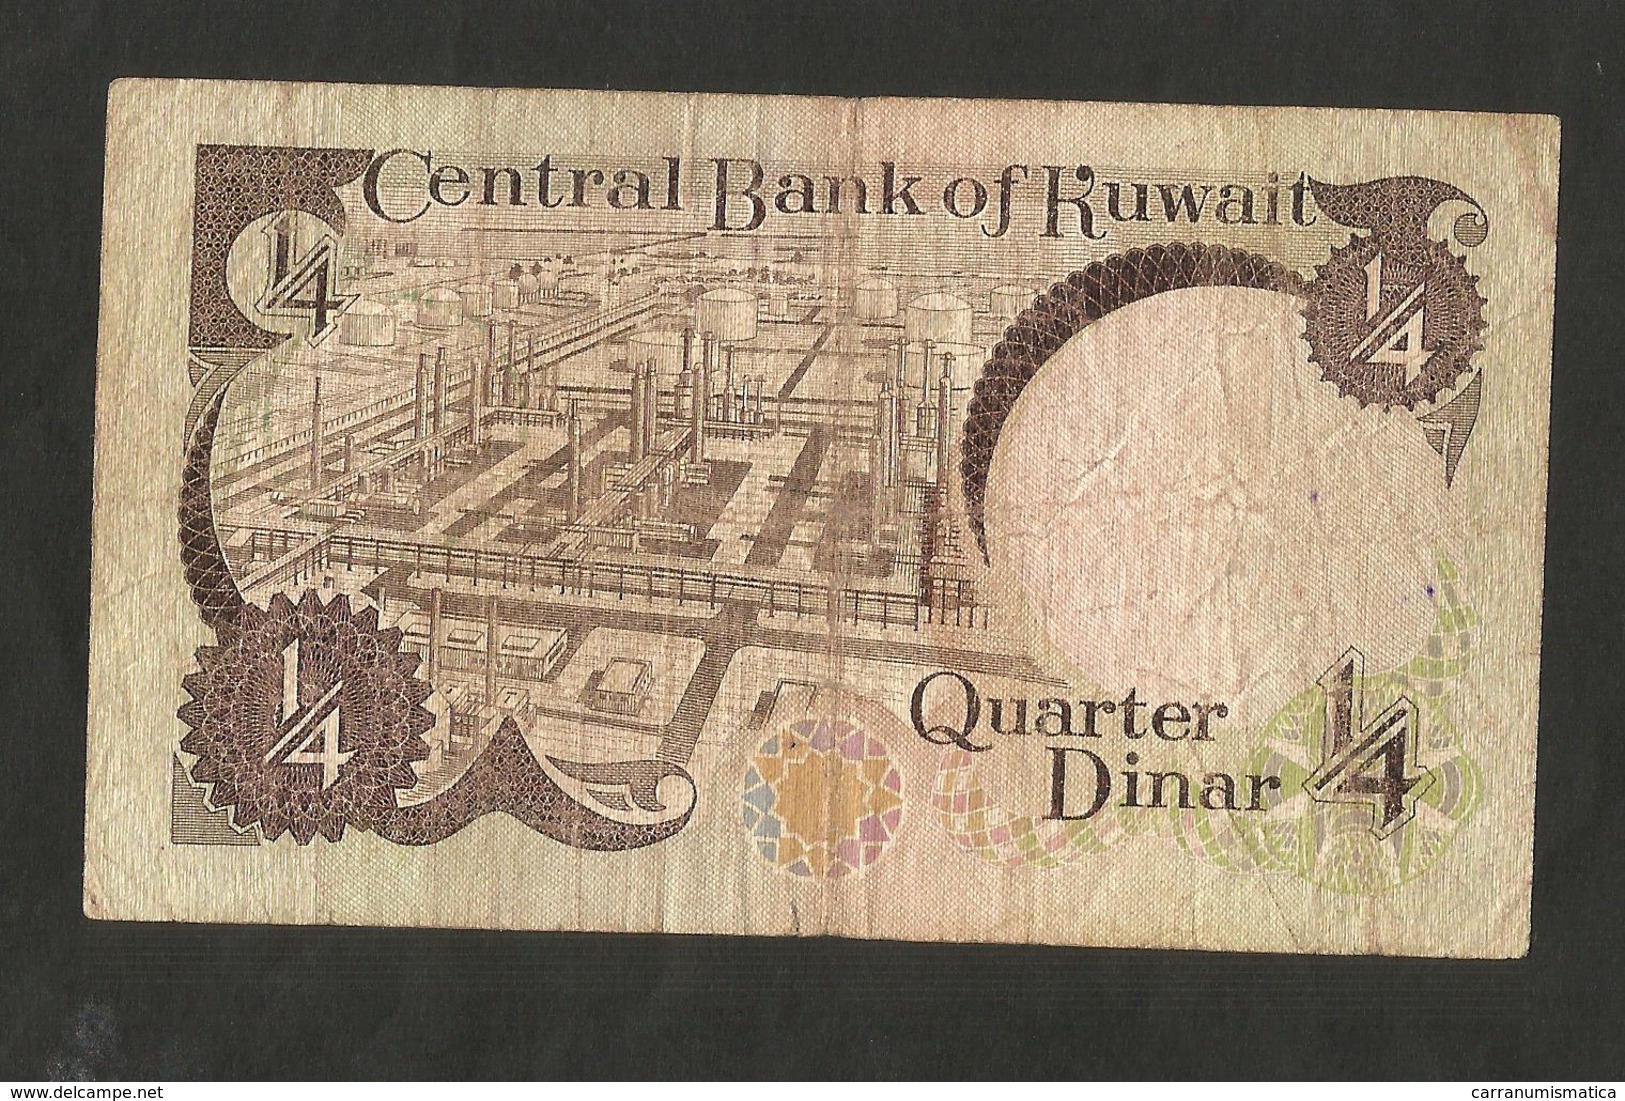 Dinar p-29a 2014 UNC Banknote Kuwait 1//4 quarter